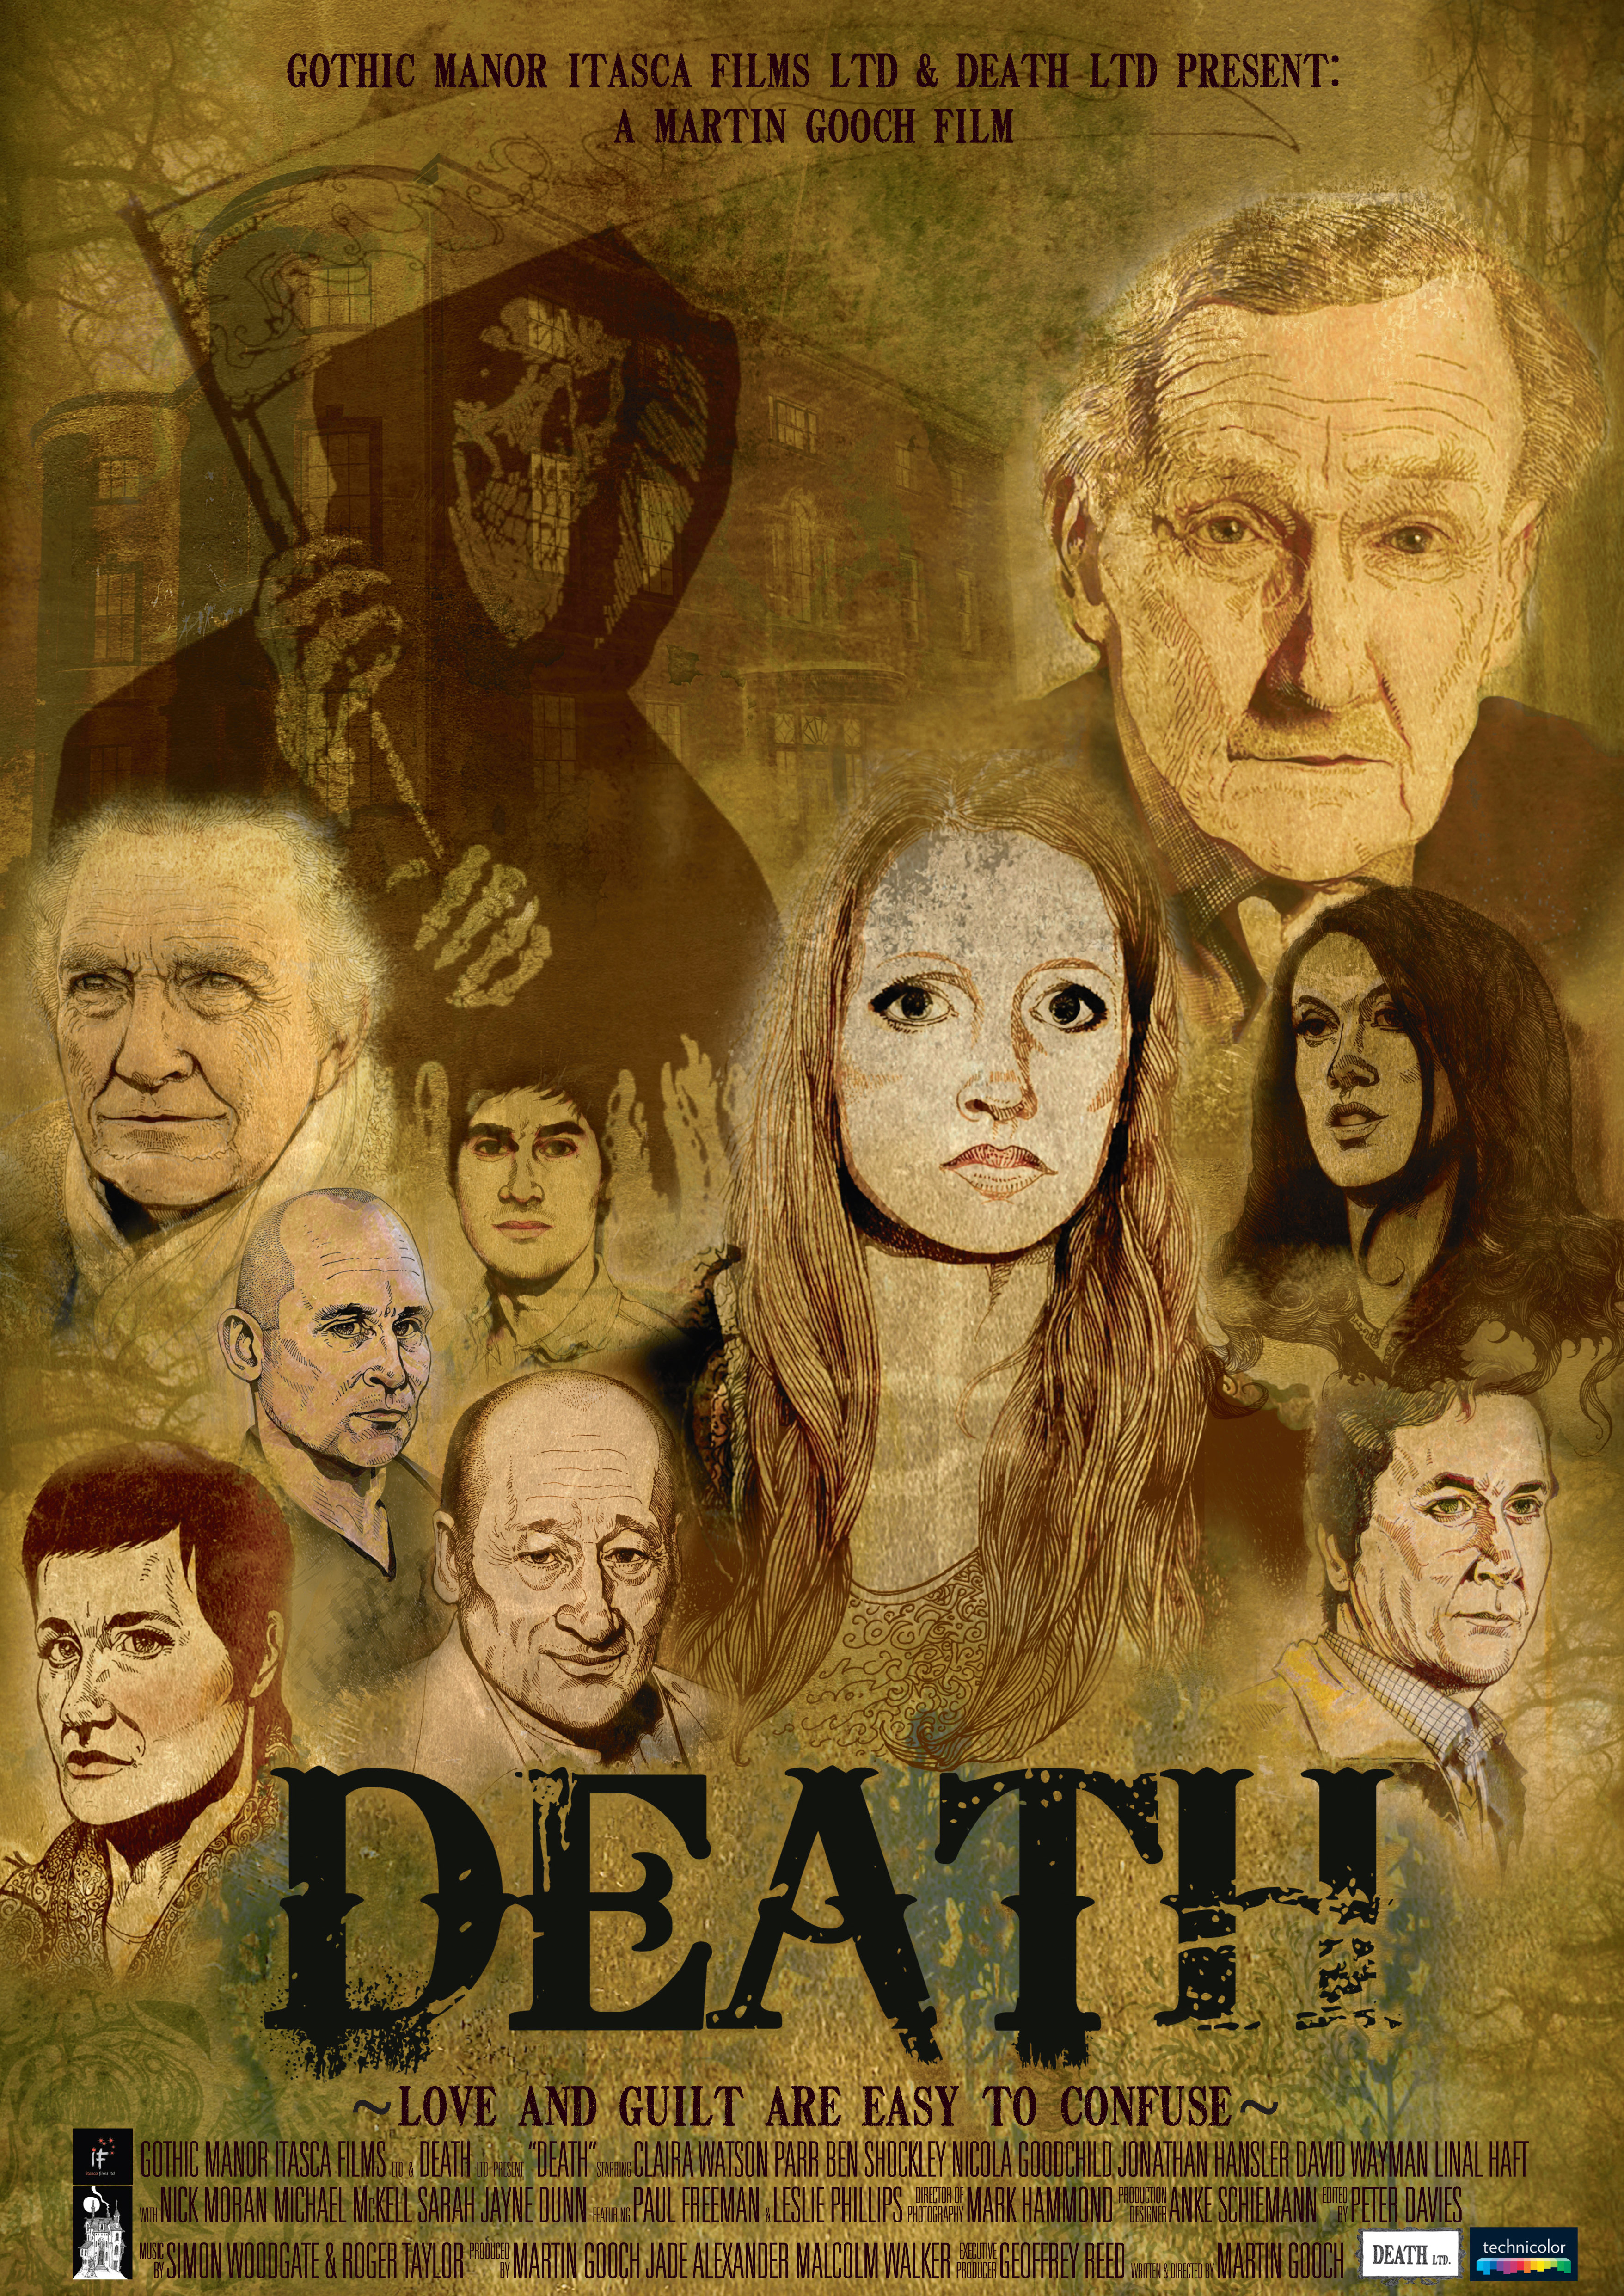 After Death (2012) Screenshot 4 